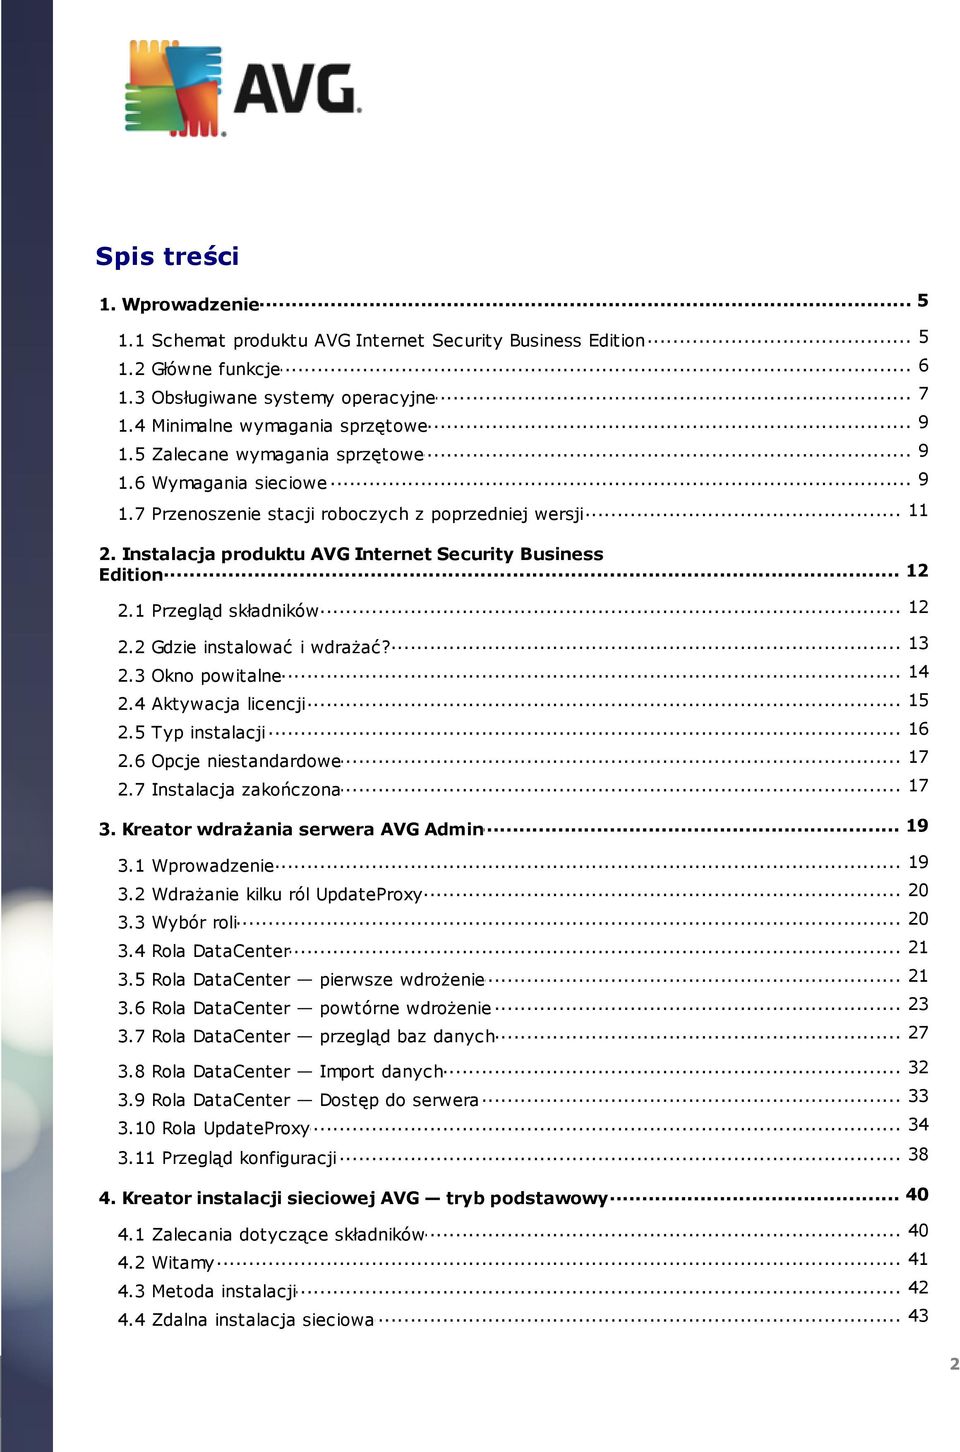 Instalacja produktu AVG Internet Security Business... 12 Edition 12 2.1 Przegląd... składników... 13 2.2 Gdzie instalować i wdrażać?... 14 2.3 Okno powitalne... 15 2.4 Aktywacja licencji... 16 2.